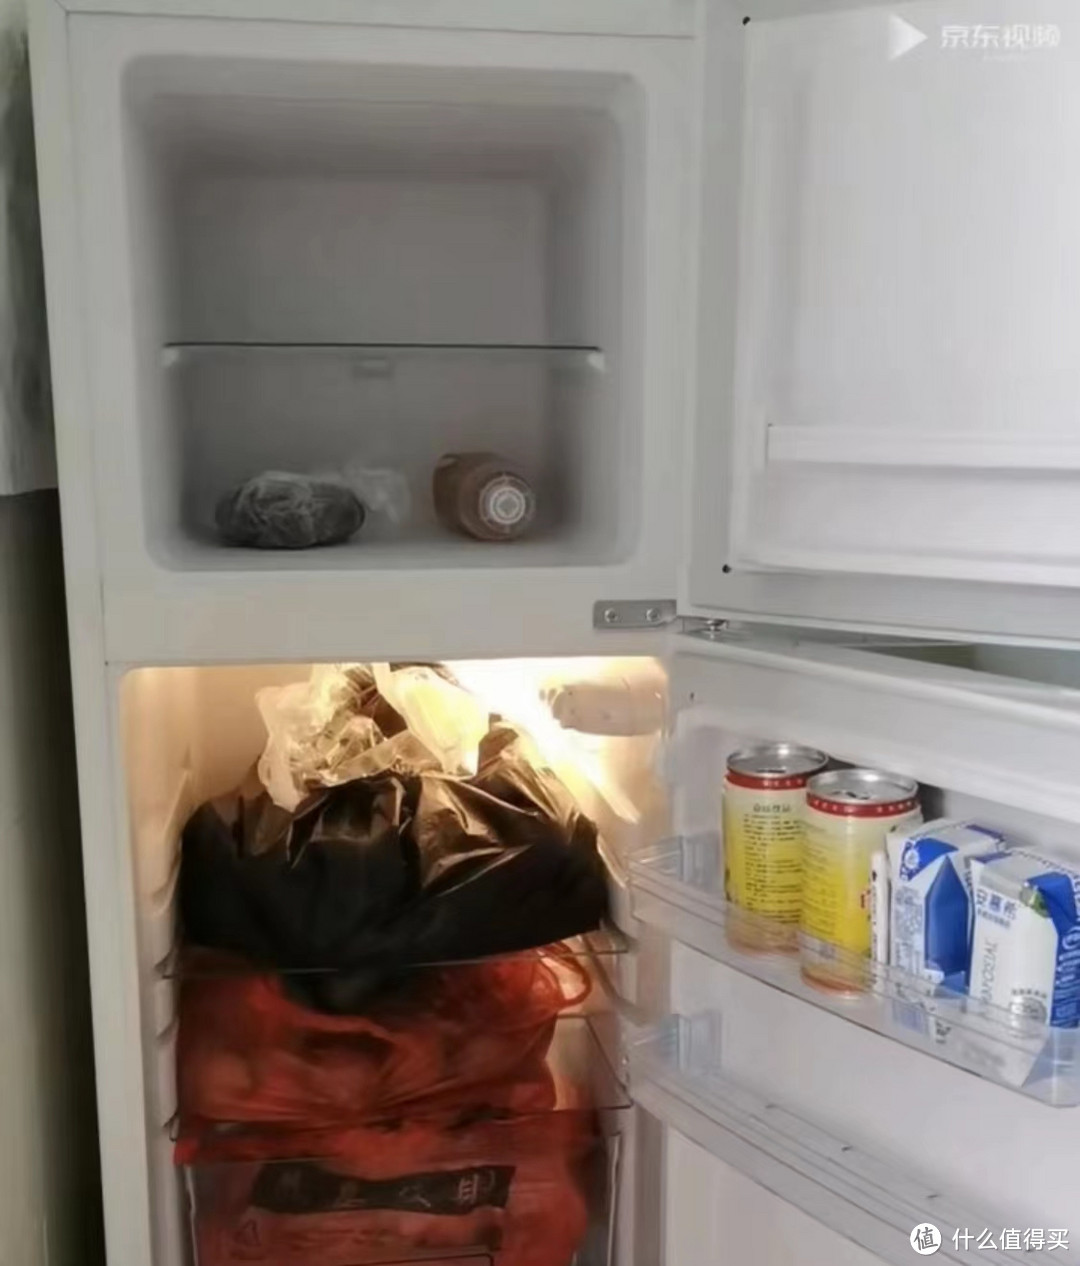 定期清理维护冰箱更健康